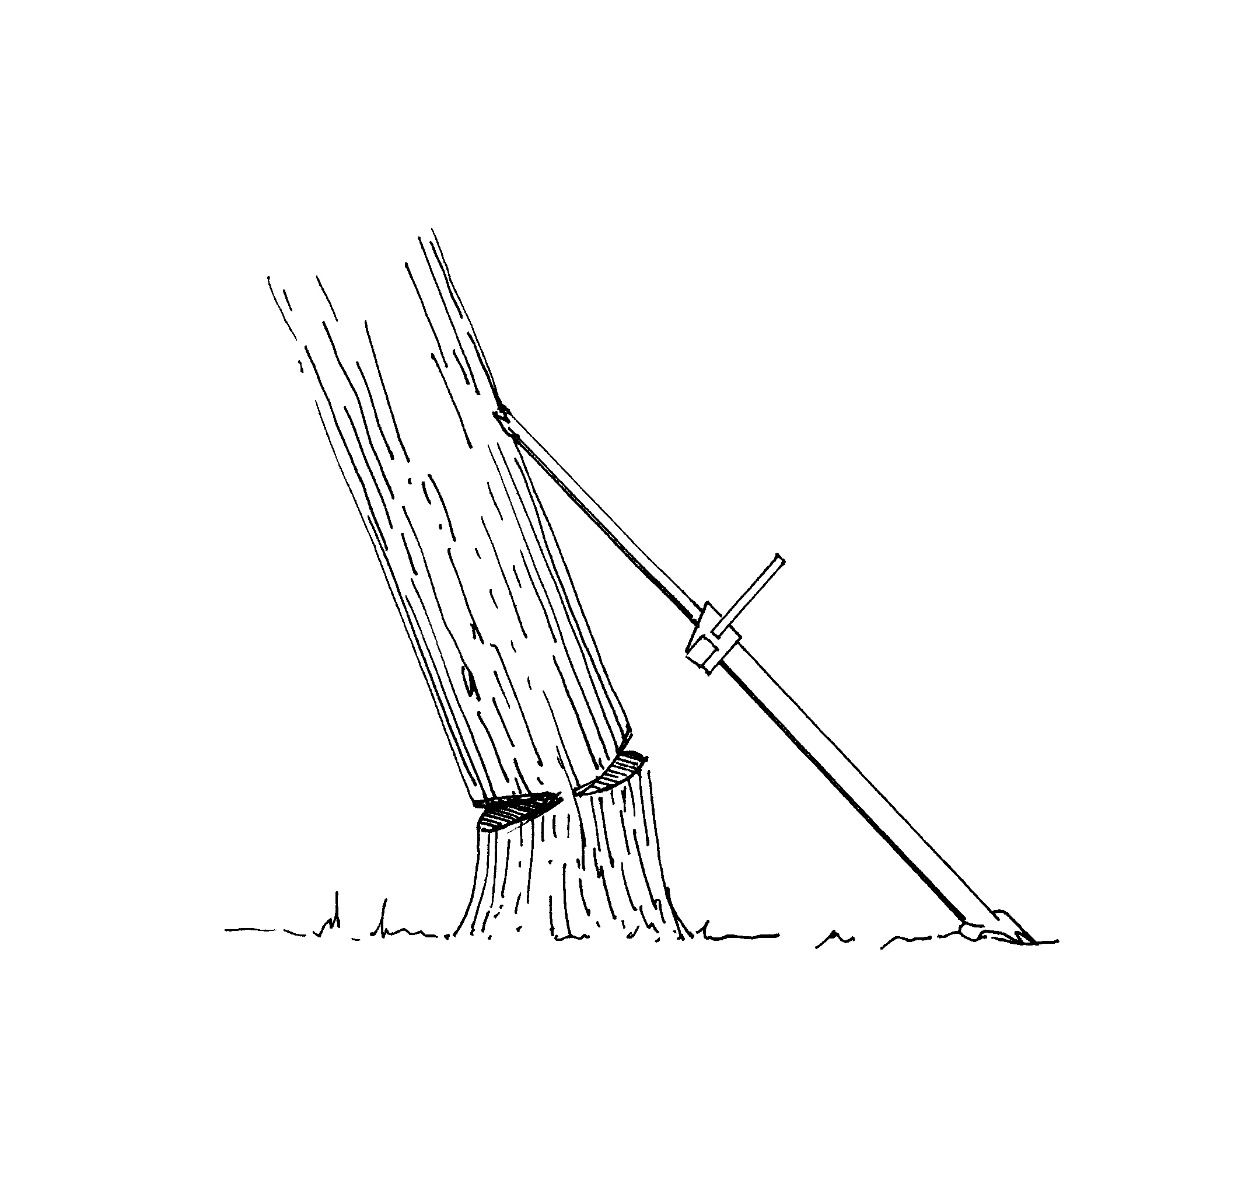 Пилим бензопилой деревья правильно и ровно? советы по резке дерева от лесопилов- обзор +видео